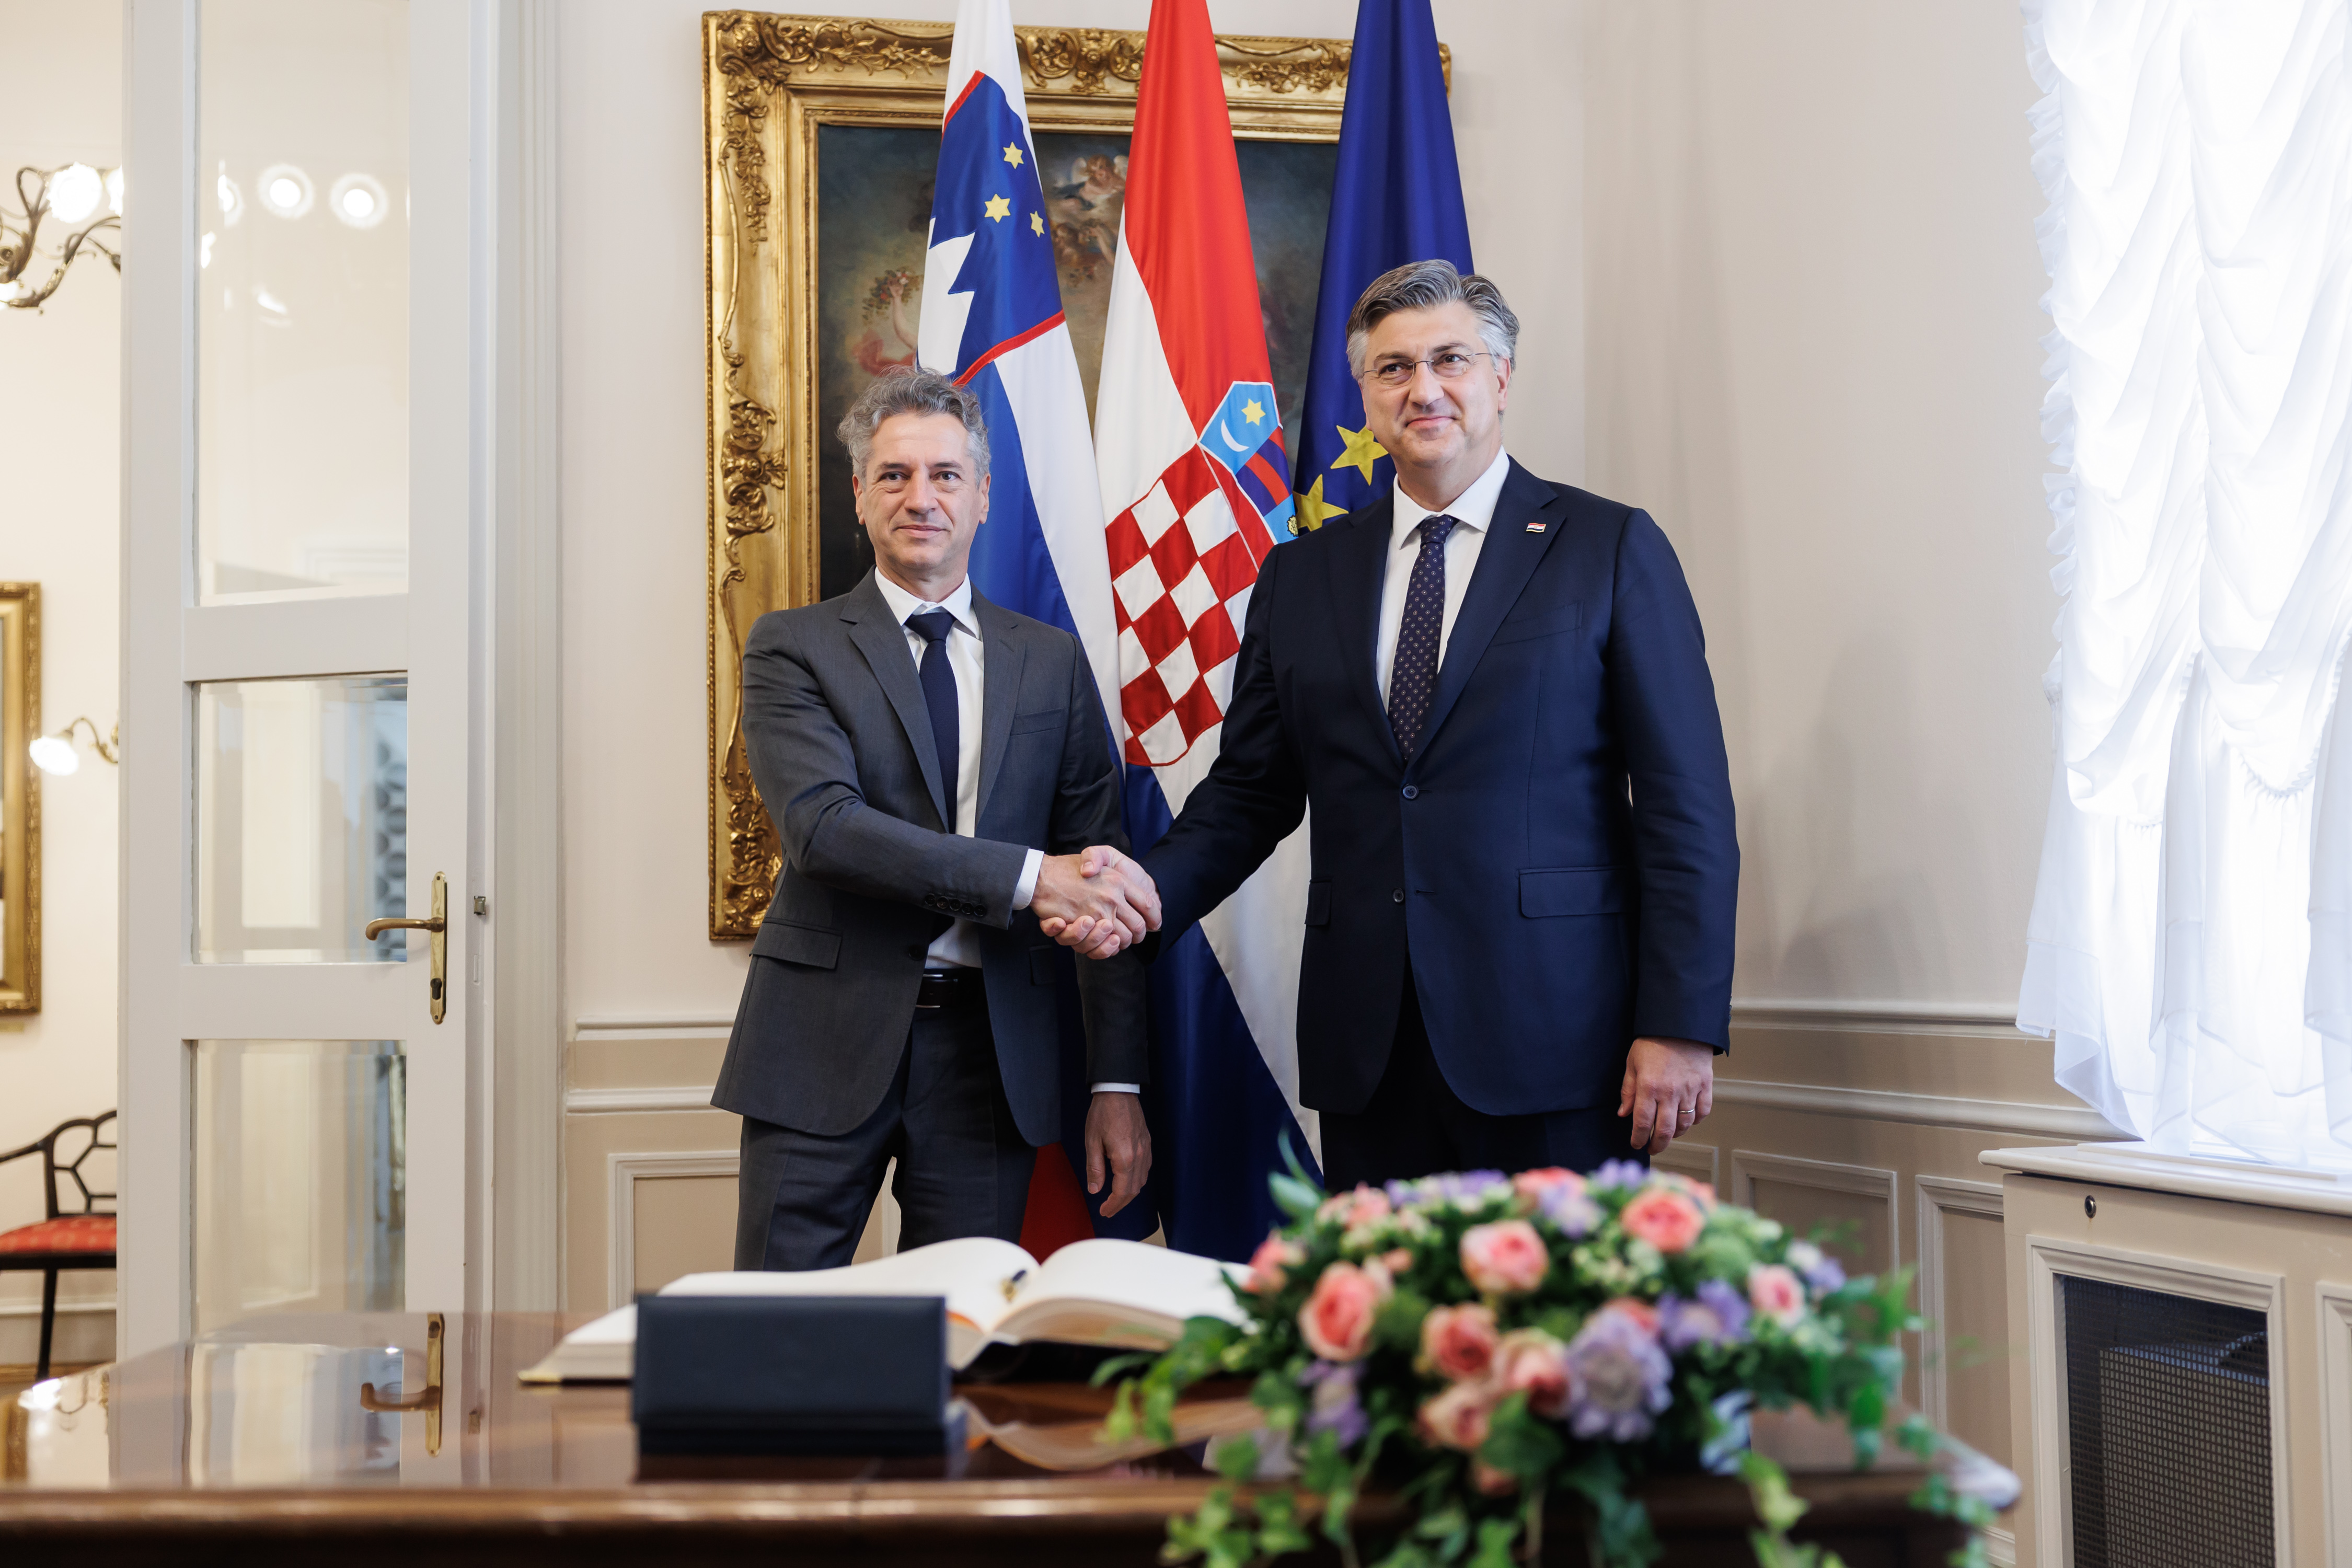 Premier Kolob v Zagrebu: Usmerjamo se v prihodnost in krepimo sodelovanje v korist državljanov